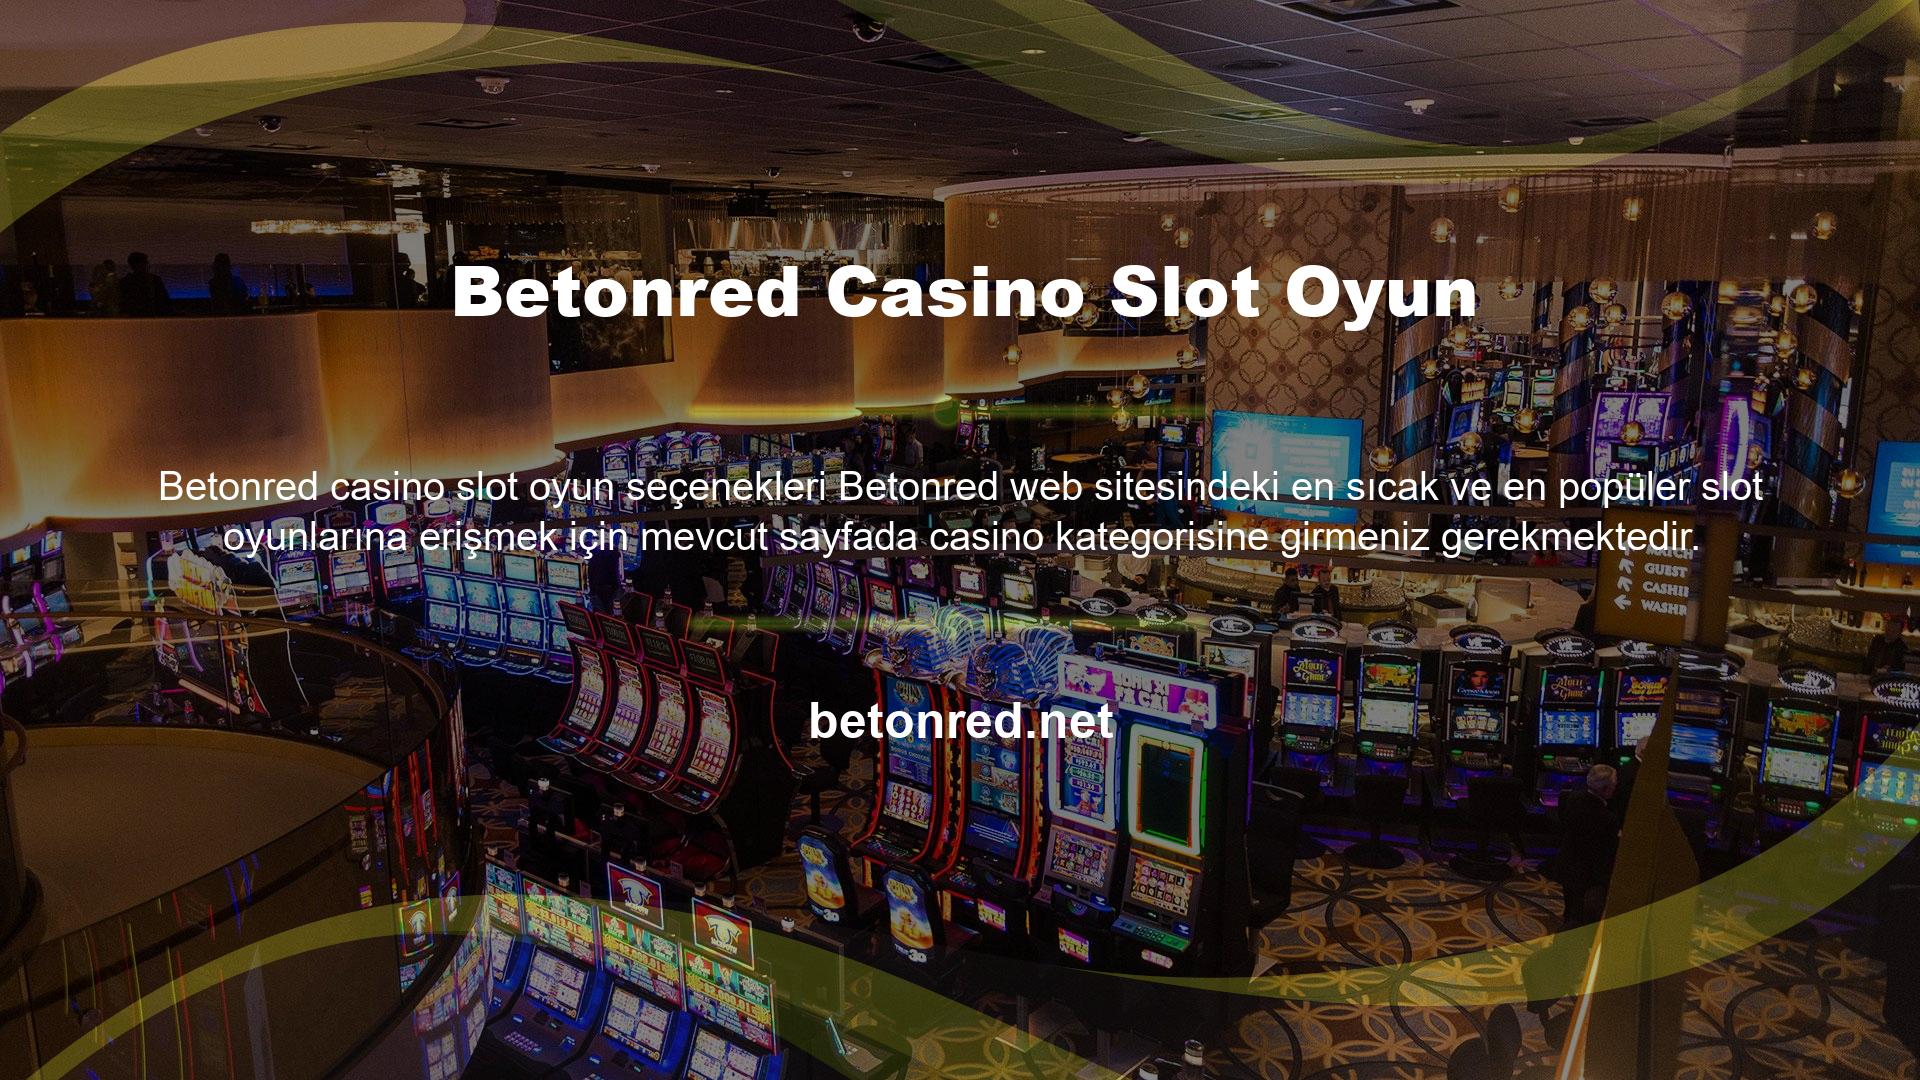 Betonred Casino Slot Oyun